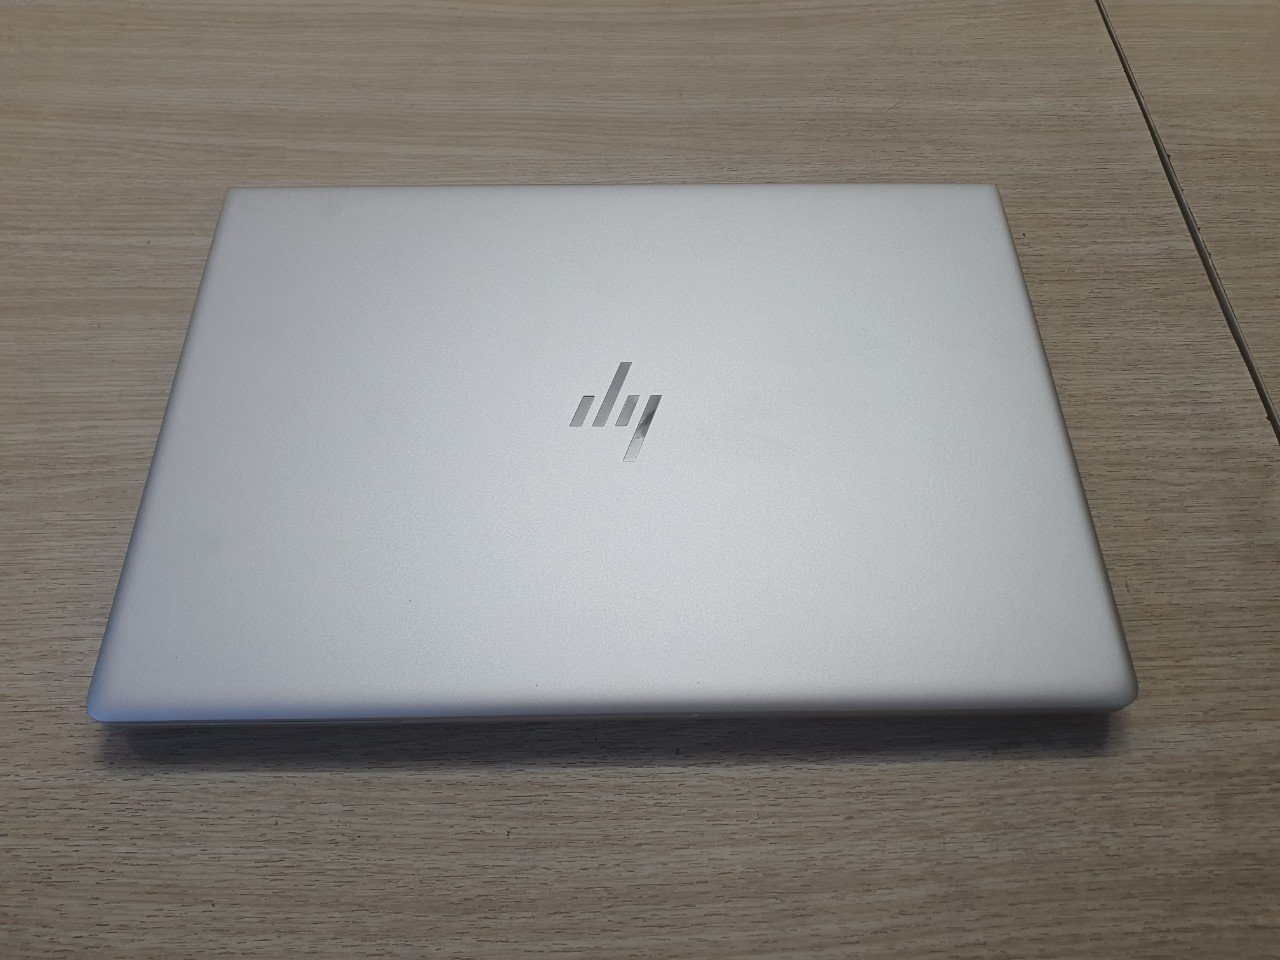 Laptop Dell chính hãng giá rẻ tại Lê Nguyễn PC, cấu hình i5, i7, laptop đồ họa - Ảnh 1